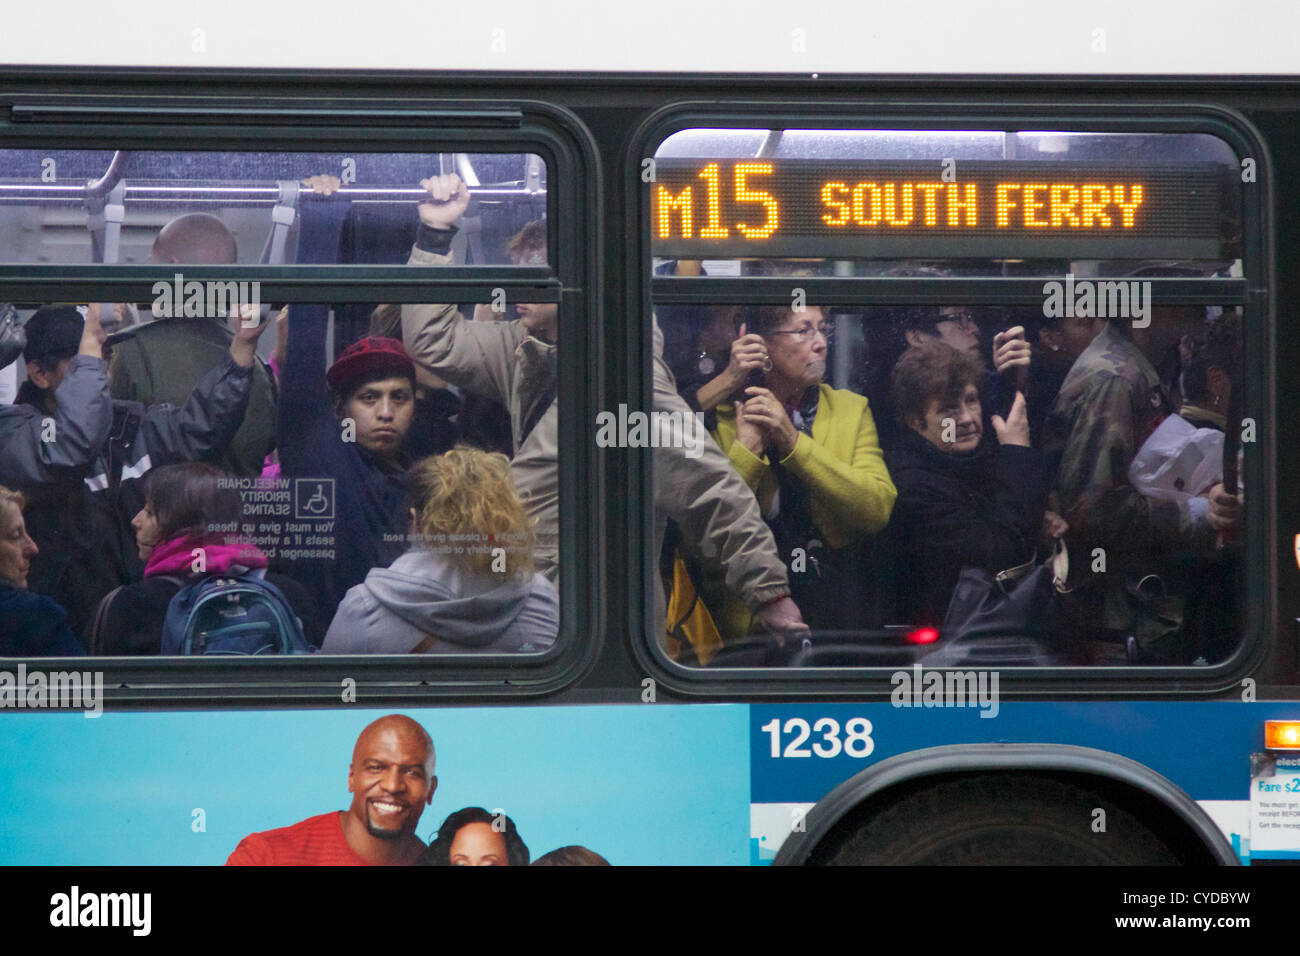 NEW YORK, NY, Stati Uniti d'America - 31 ottobre 2012: Servizio Bus avente riprende dopo l uragano Sandy ha colpito la città, MTA bus rimangono rare e sovraffollato in oscurati-fuori la parte inferiore di Manhattan a New York, NY, STATI UNITI D'AMERICA, il 31 ottobre 2012. Foto Stock